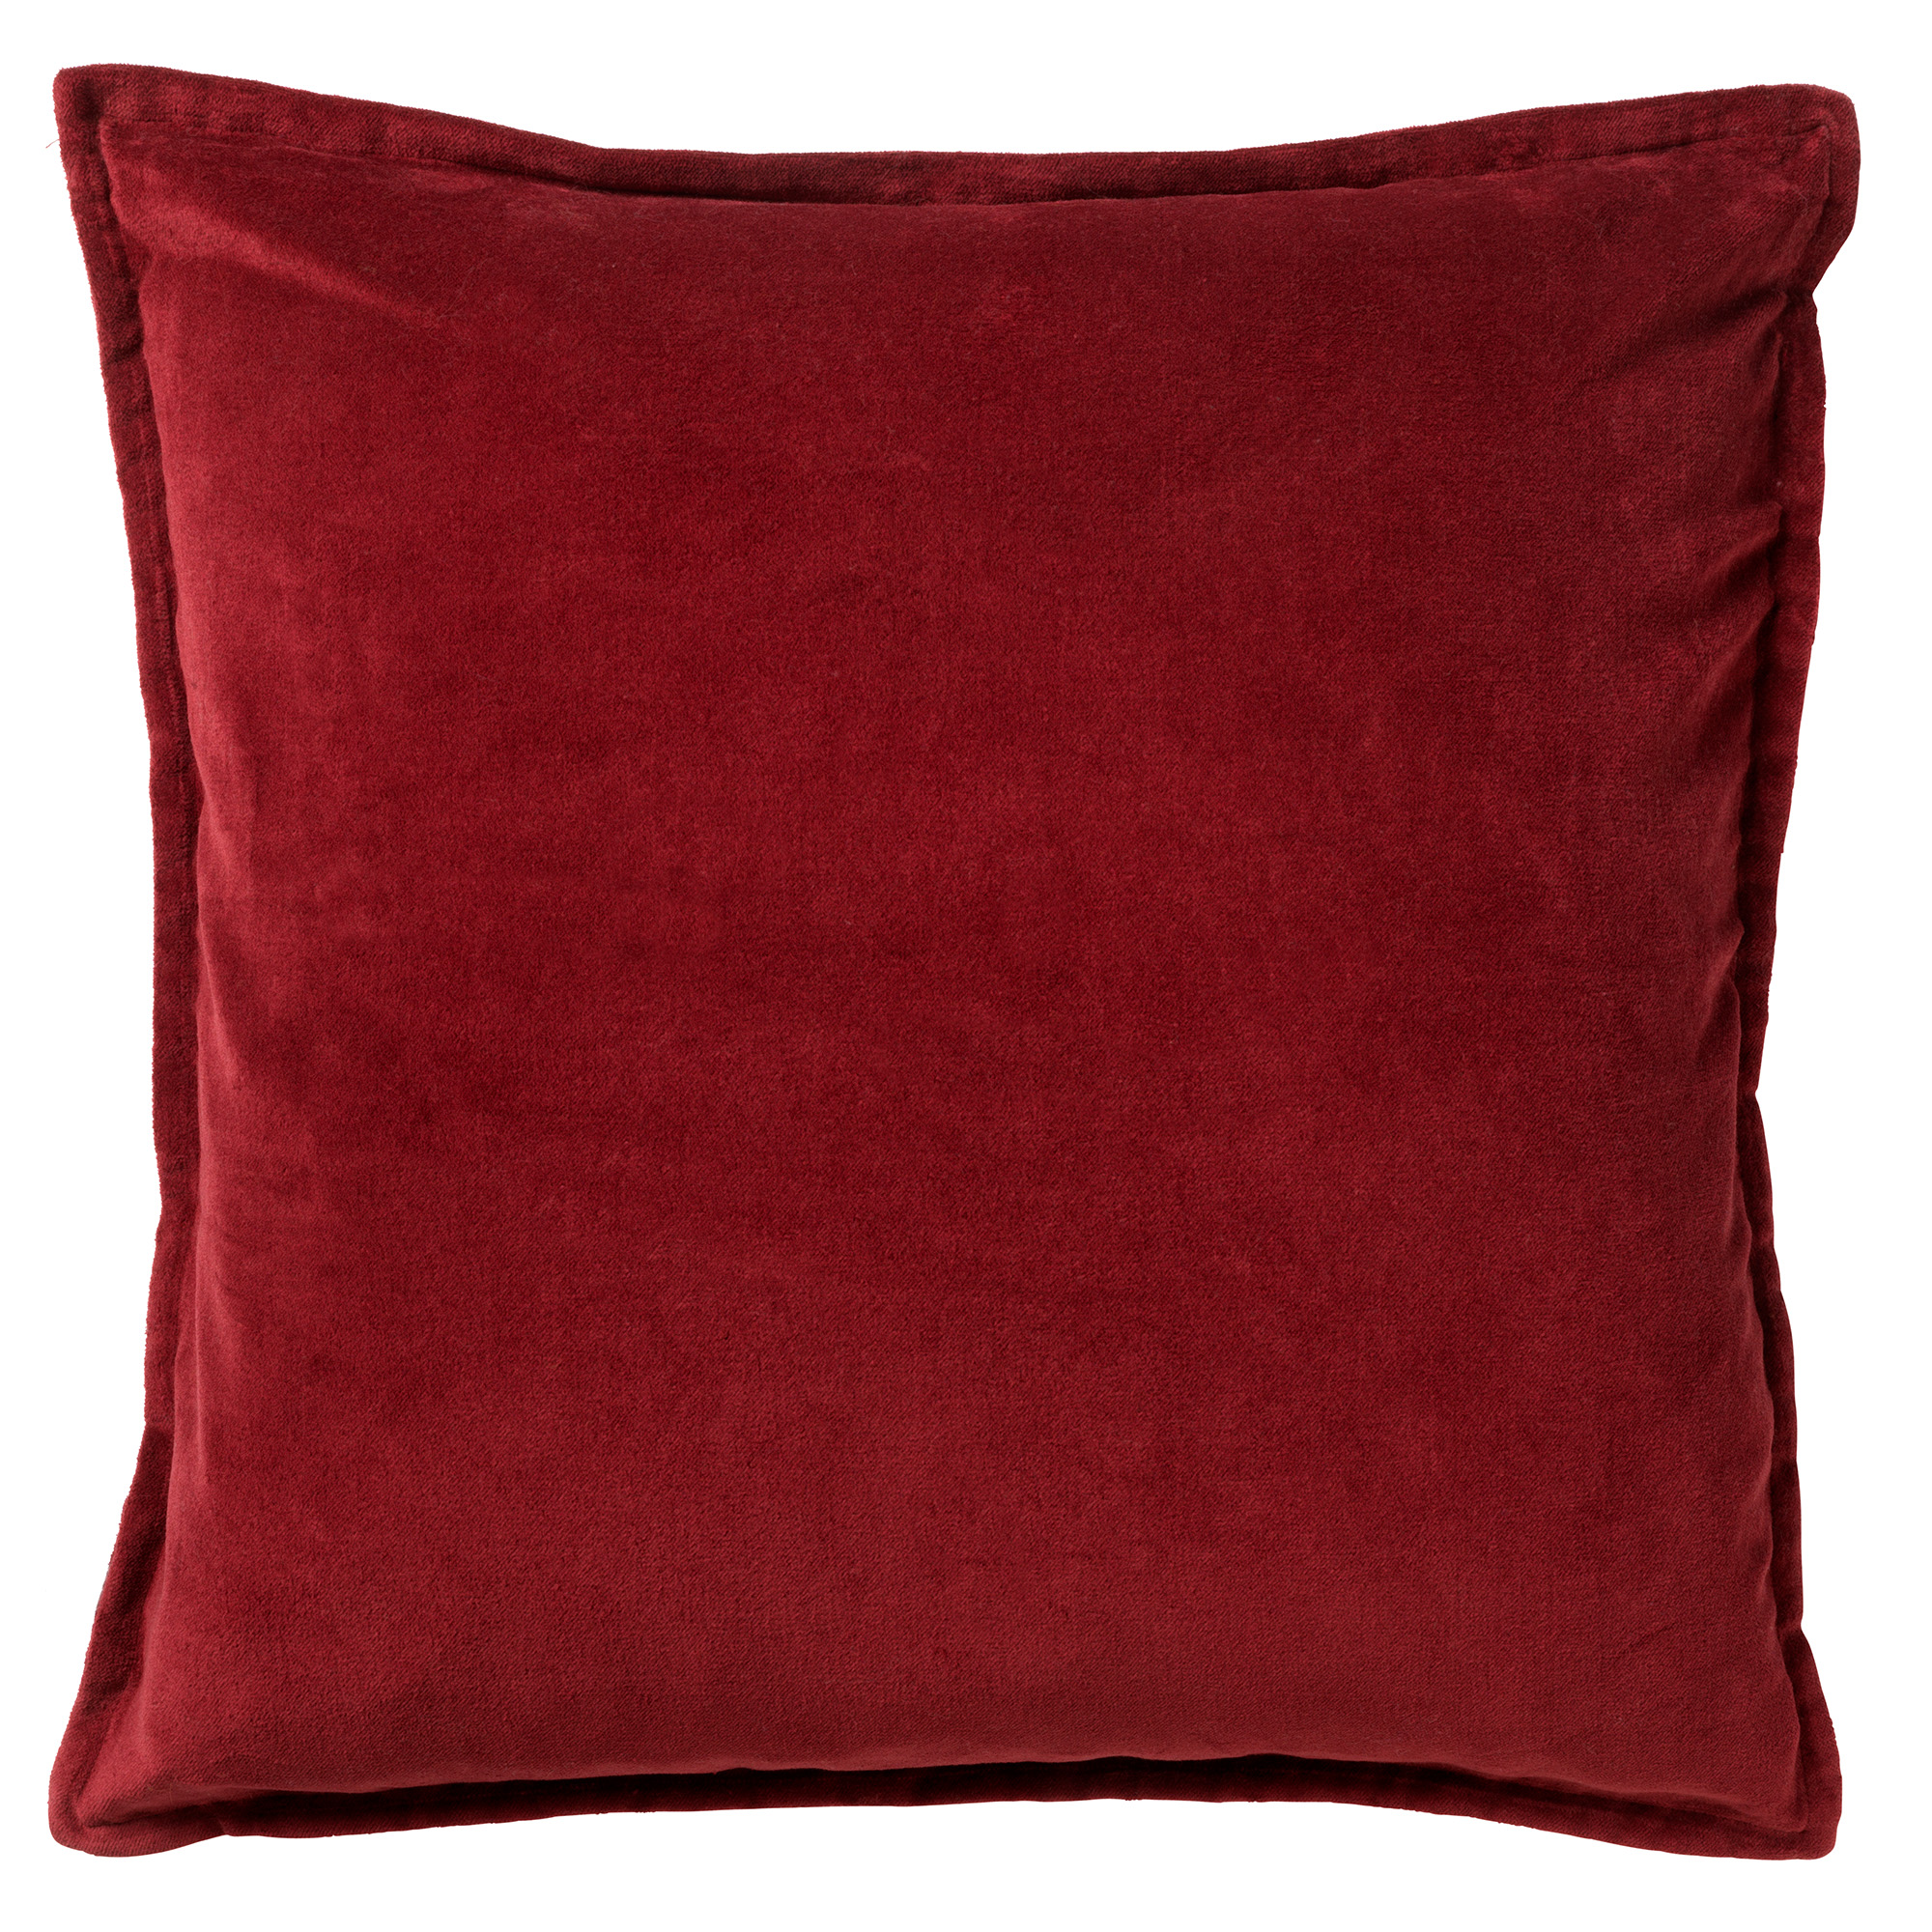 CAITH - Sierkussen velvet Merlot 50x50 cm - rood